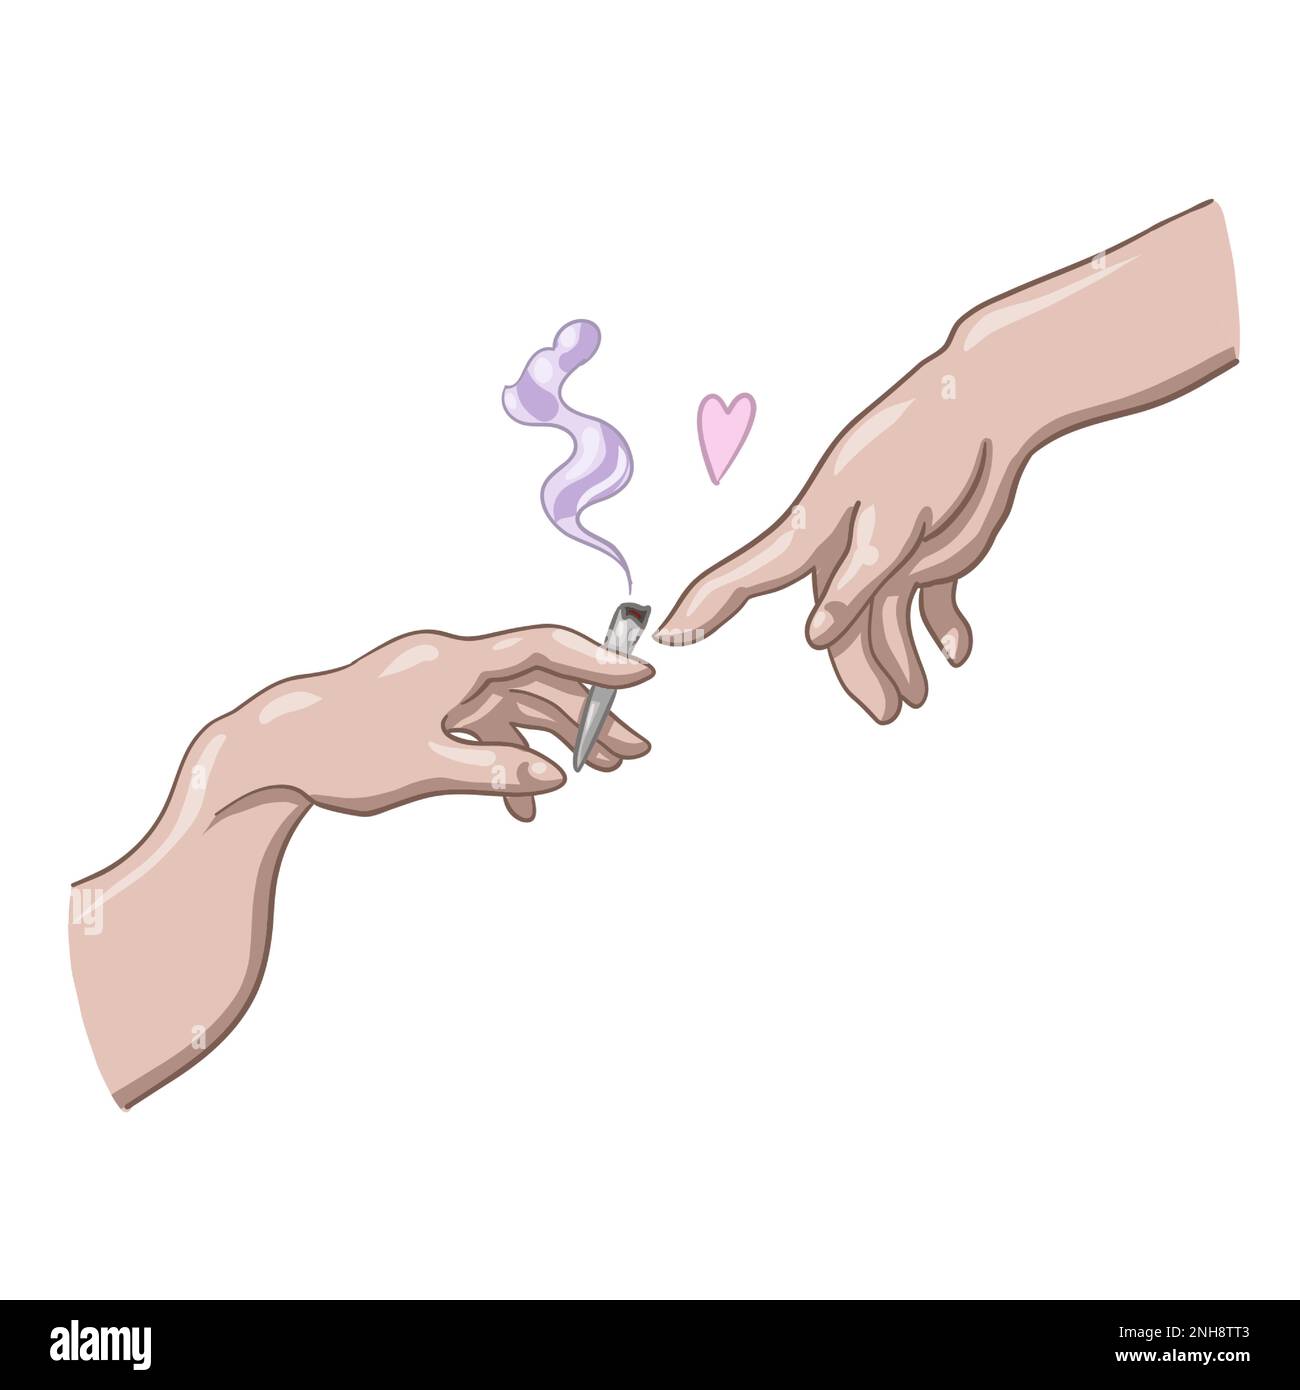 Cannabishände von Michelangelo. Raucherpfeife mit Marihuana. Legalisieren Sie den Cannabisvektor Stock Vektor